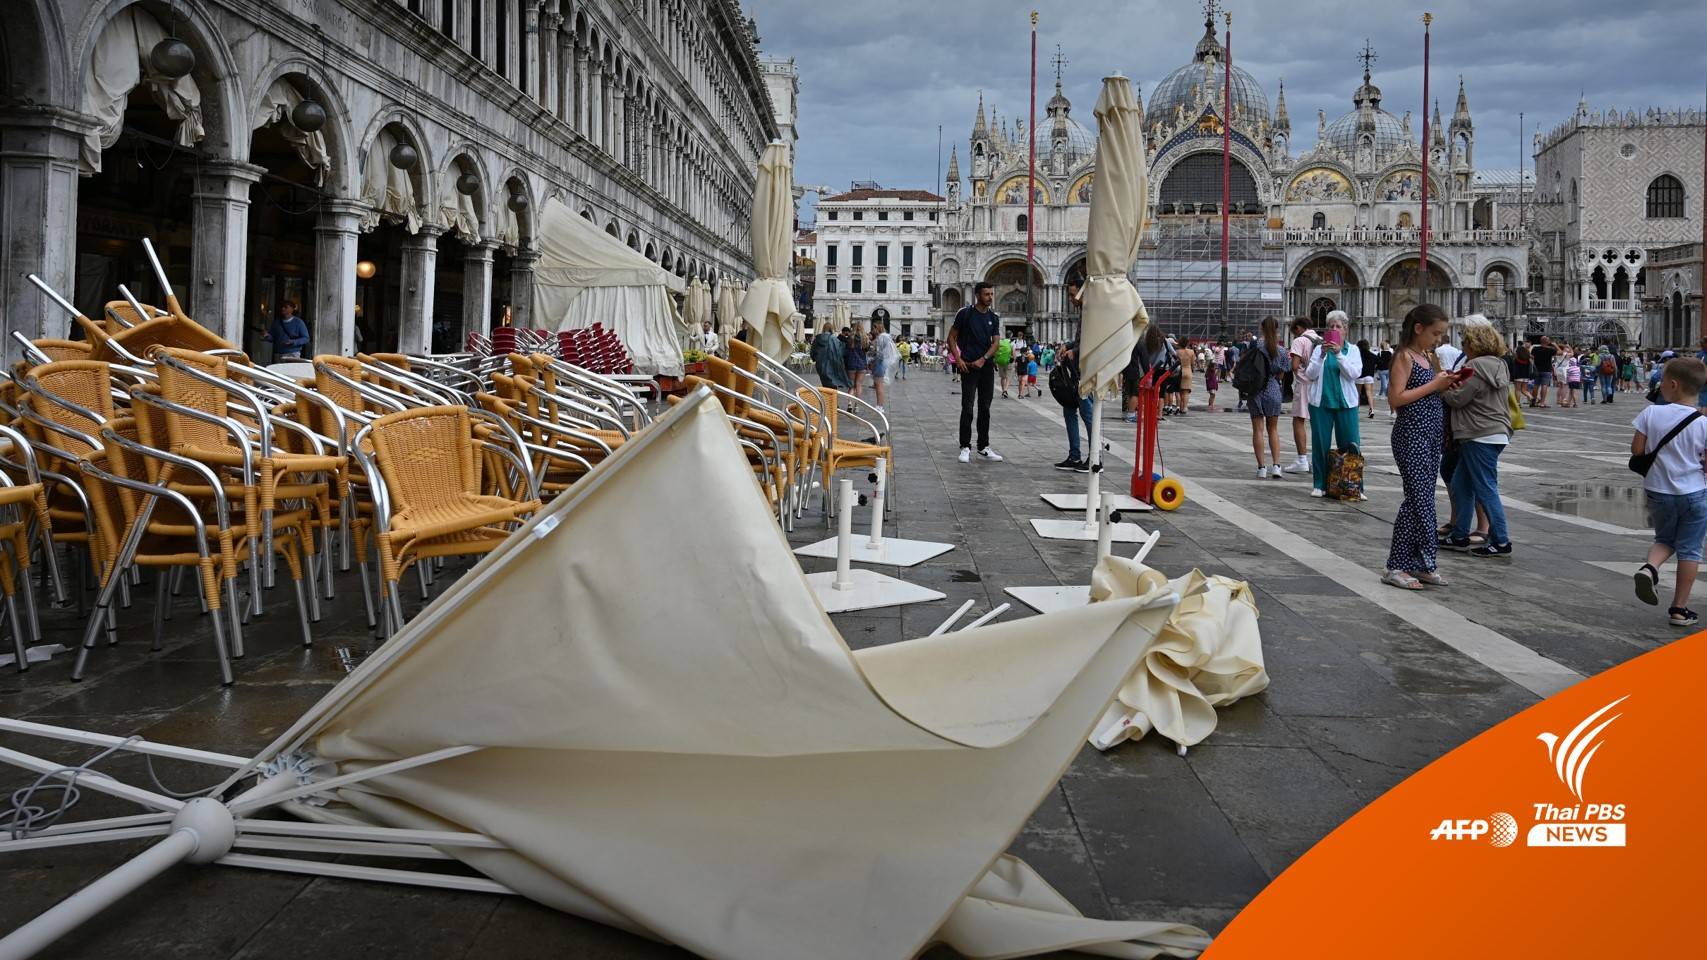 พายุฝนถล่ม "Piazza San Marco" เมืองเวนิส นักท่องเที่ยวหนีวุ่น 